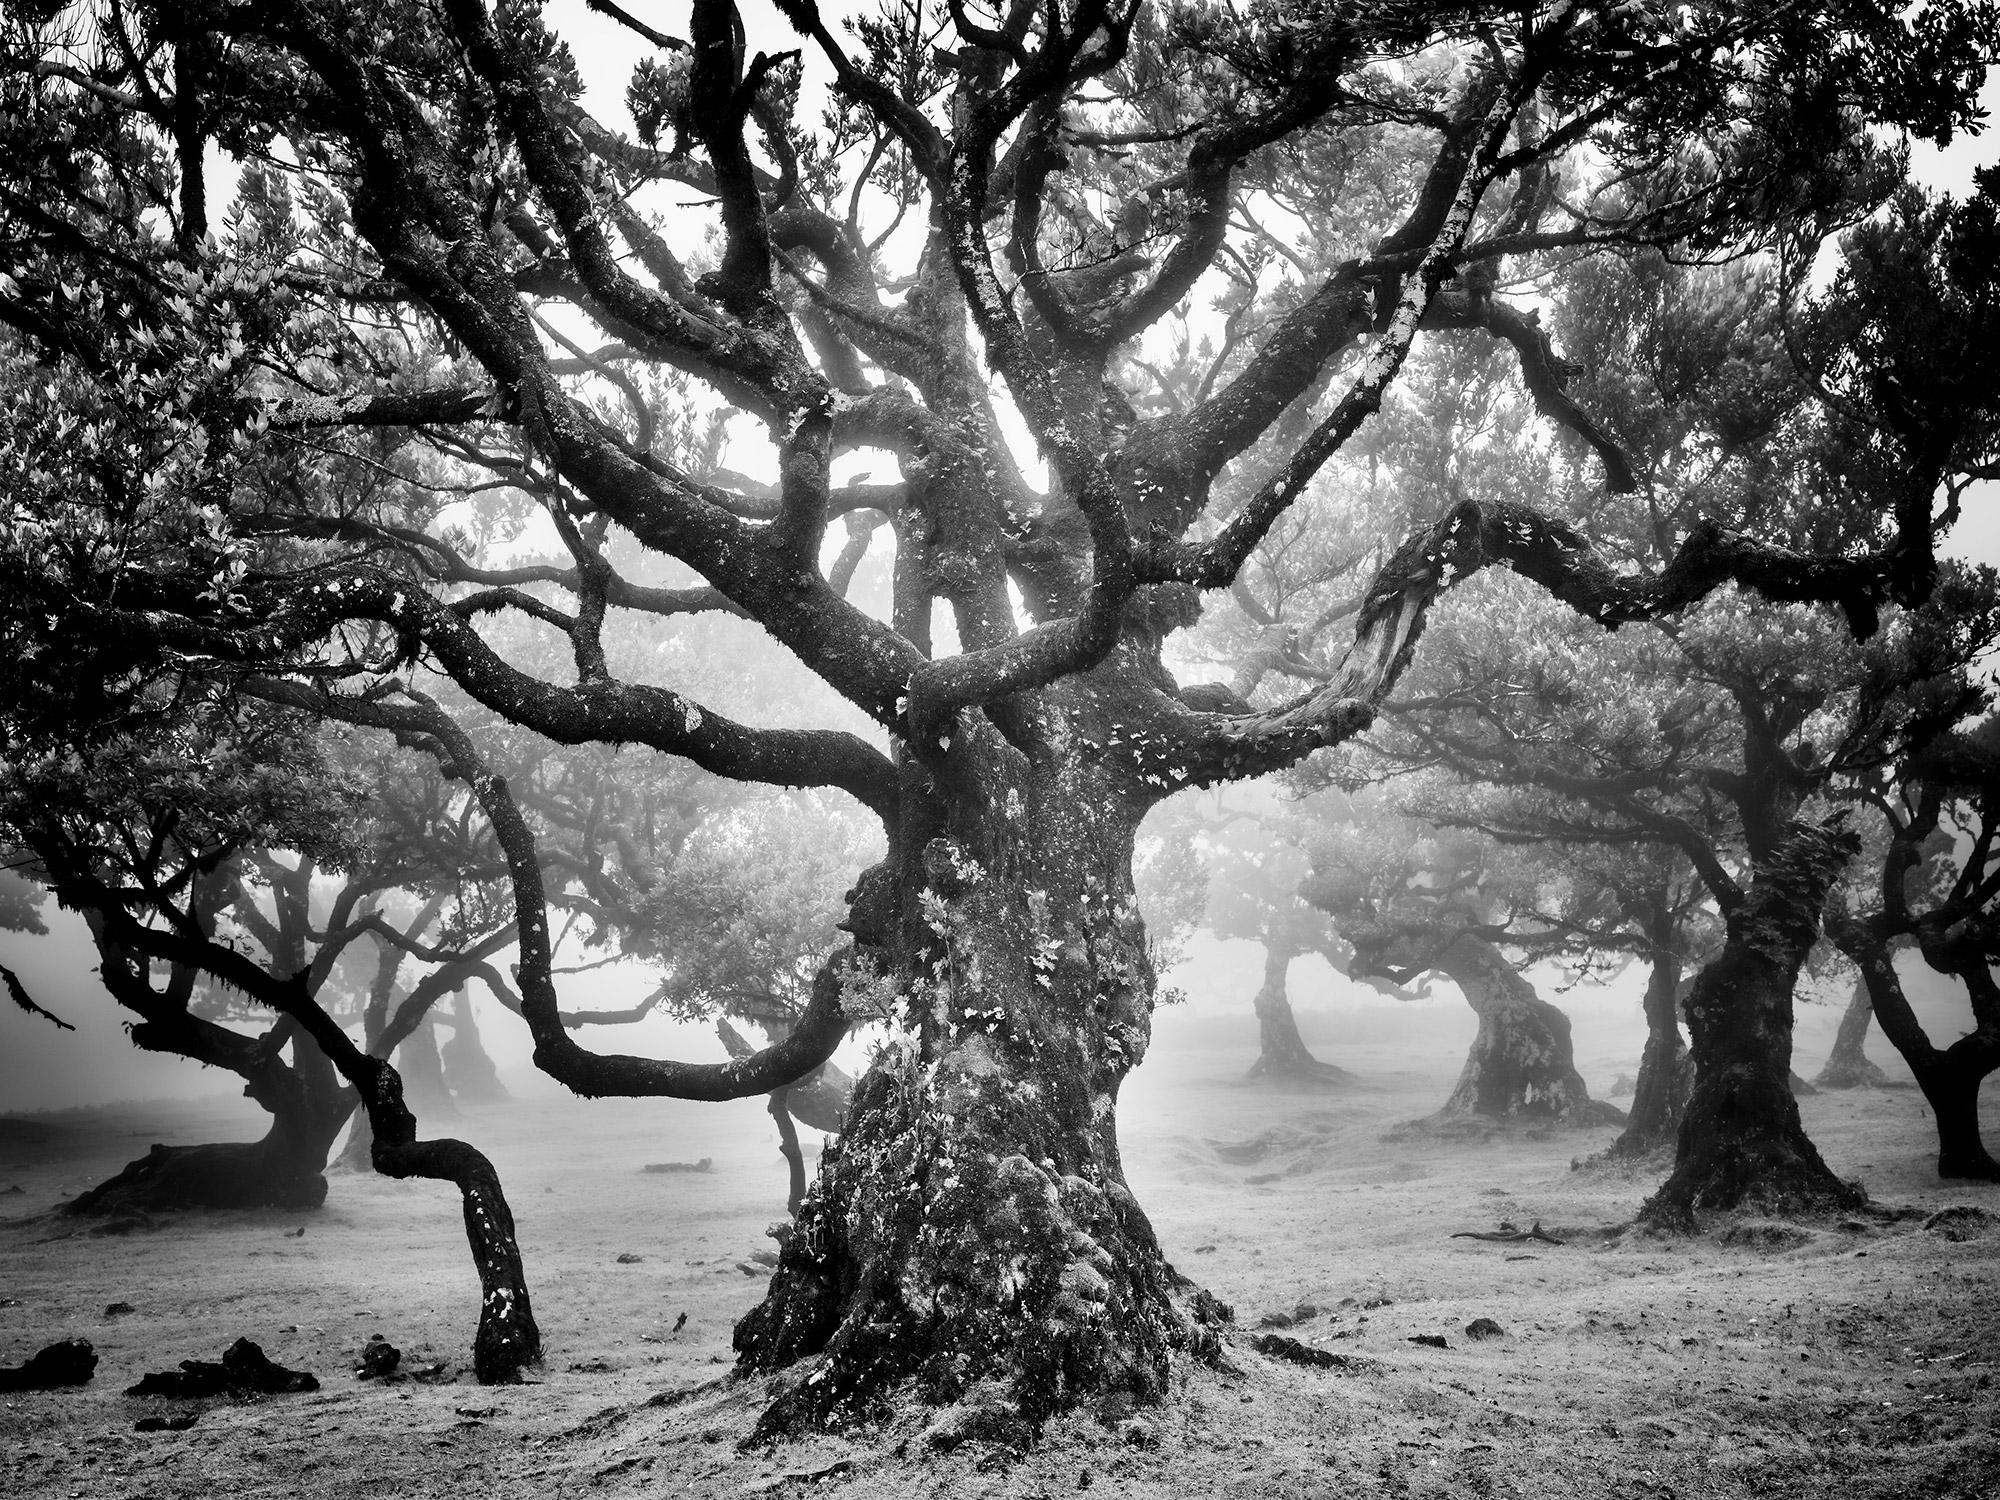 Landscape Photograph Gerald Berghammer - Ancienne forêt de Laurisilva, arbre mystique, photographie d'art en noir et blanc